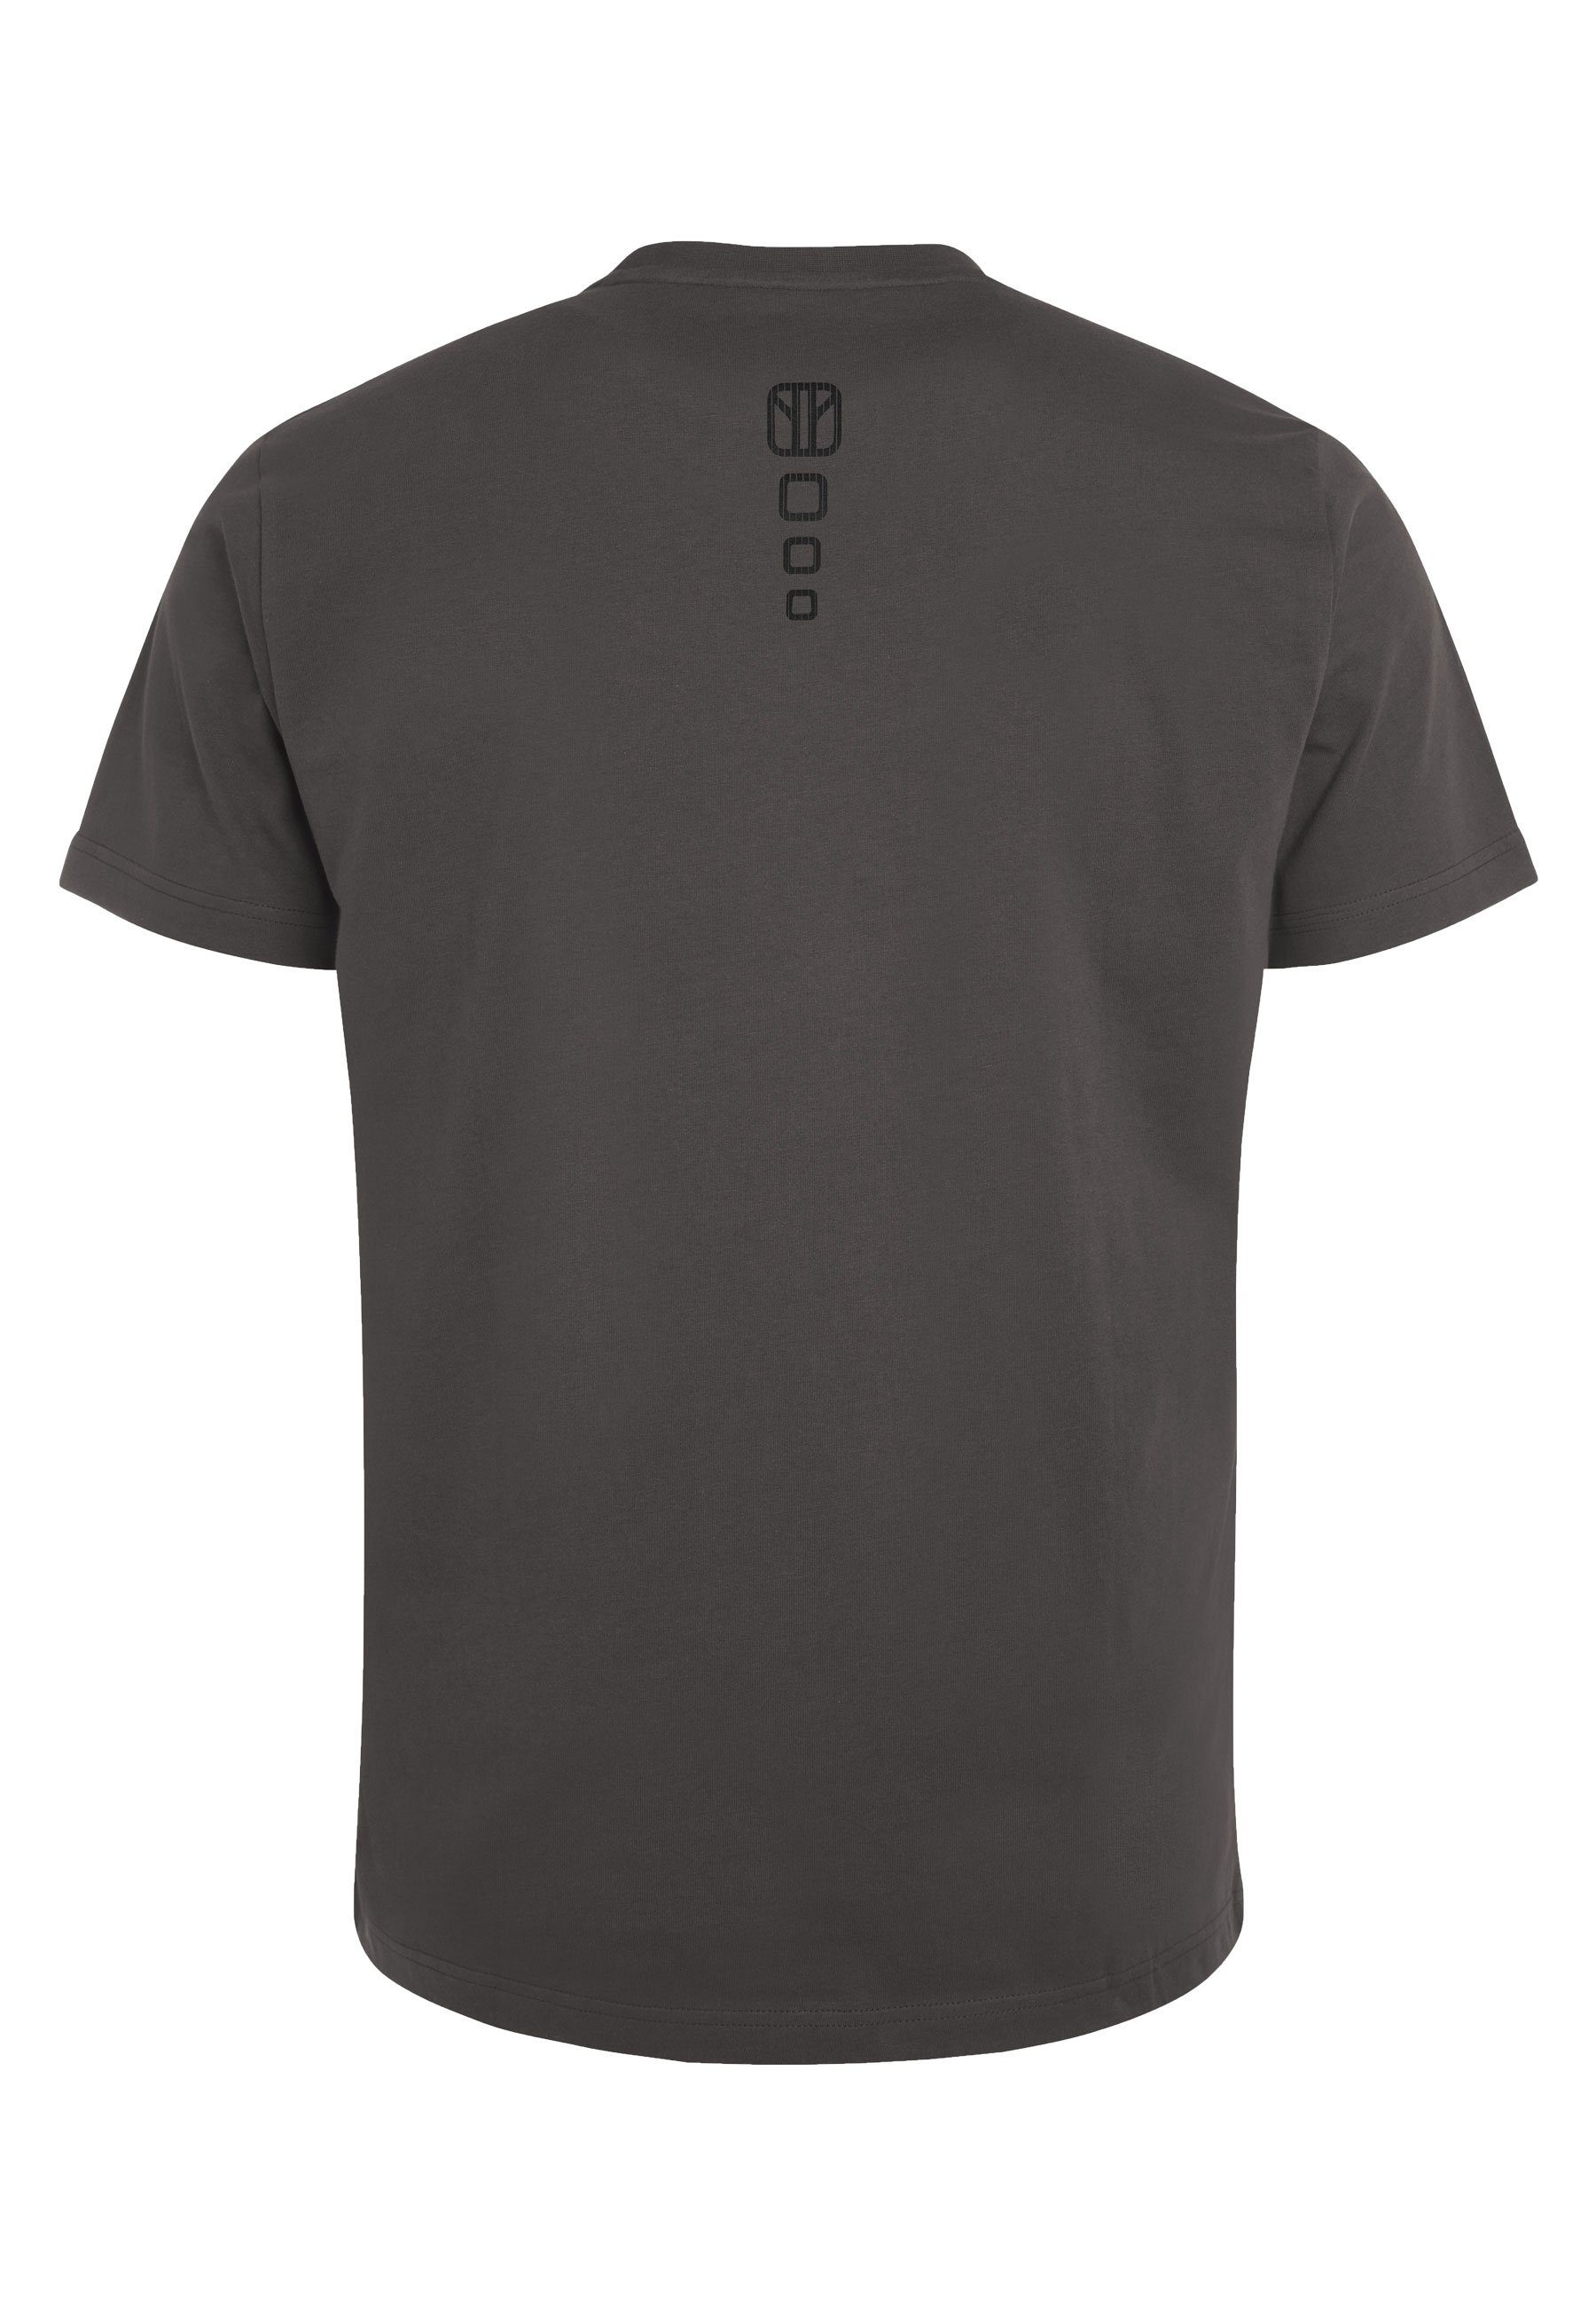 sportlich gerader Basic Schnitt Drive grey Unifarben Cool T-Shirt Elkline